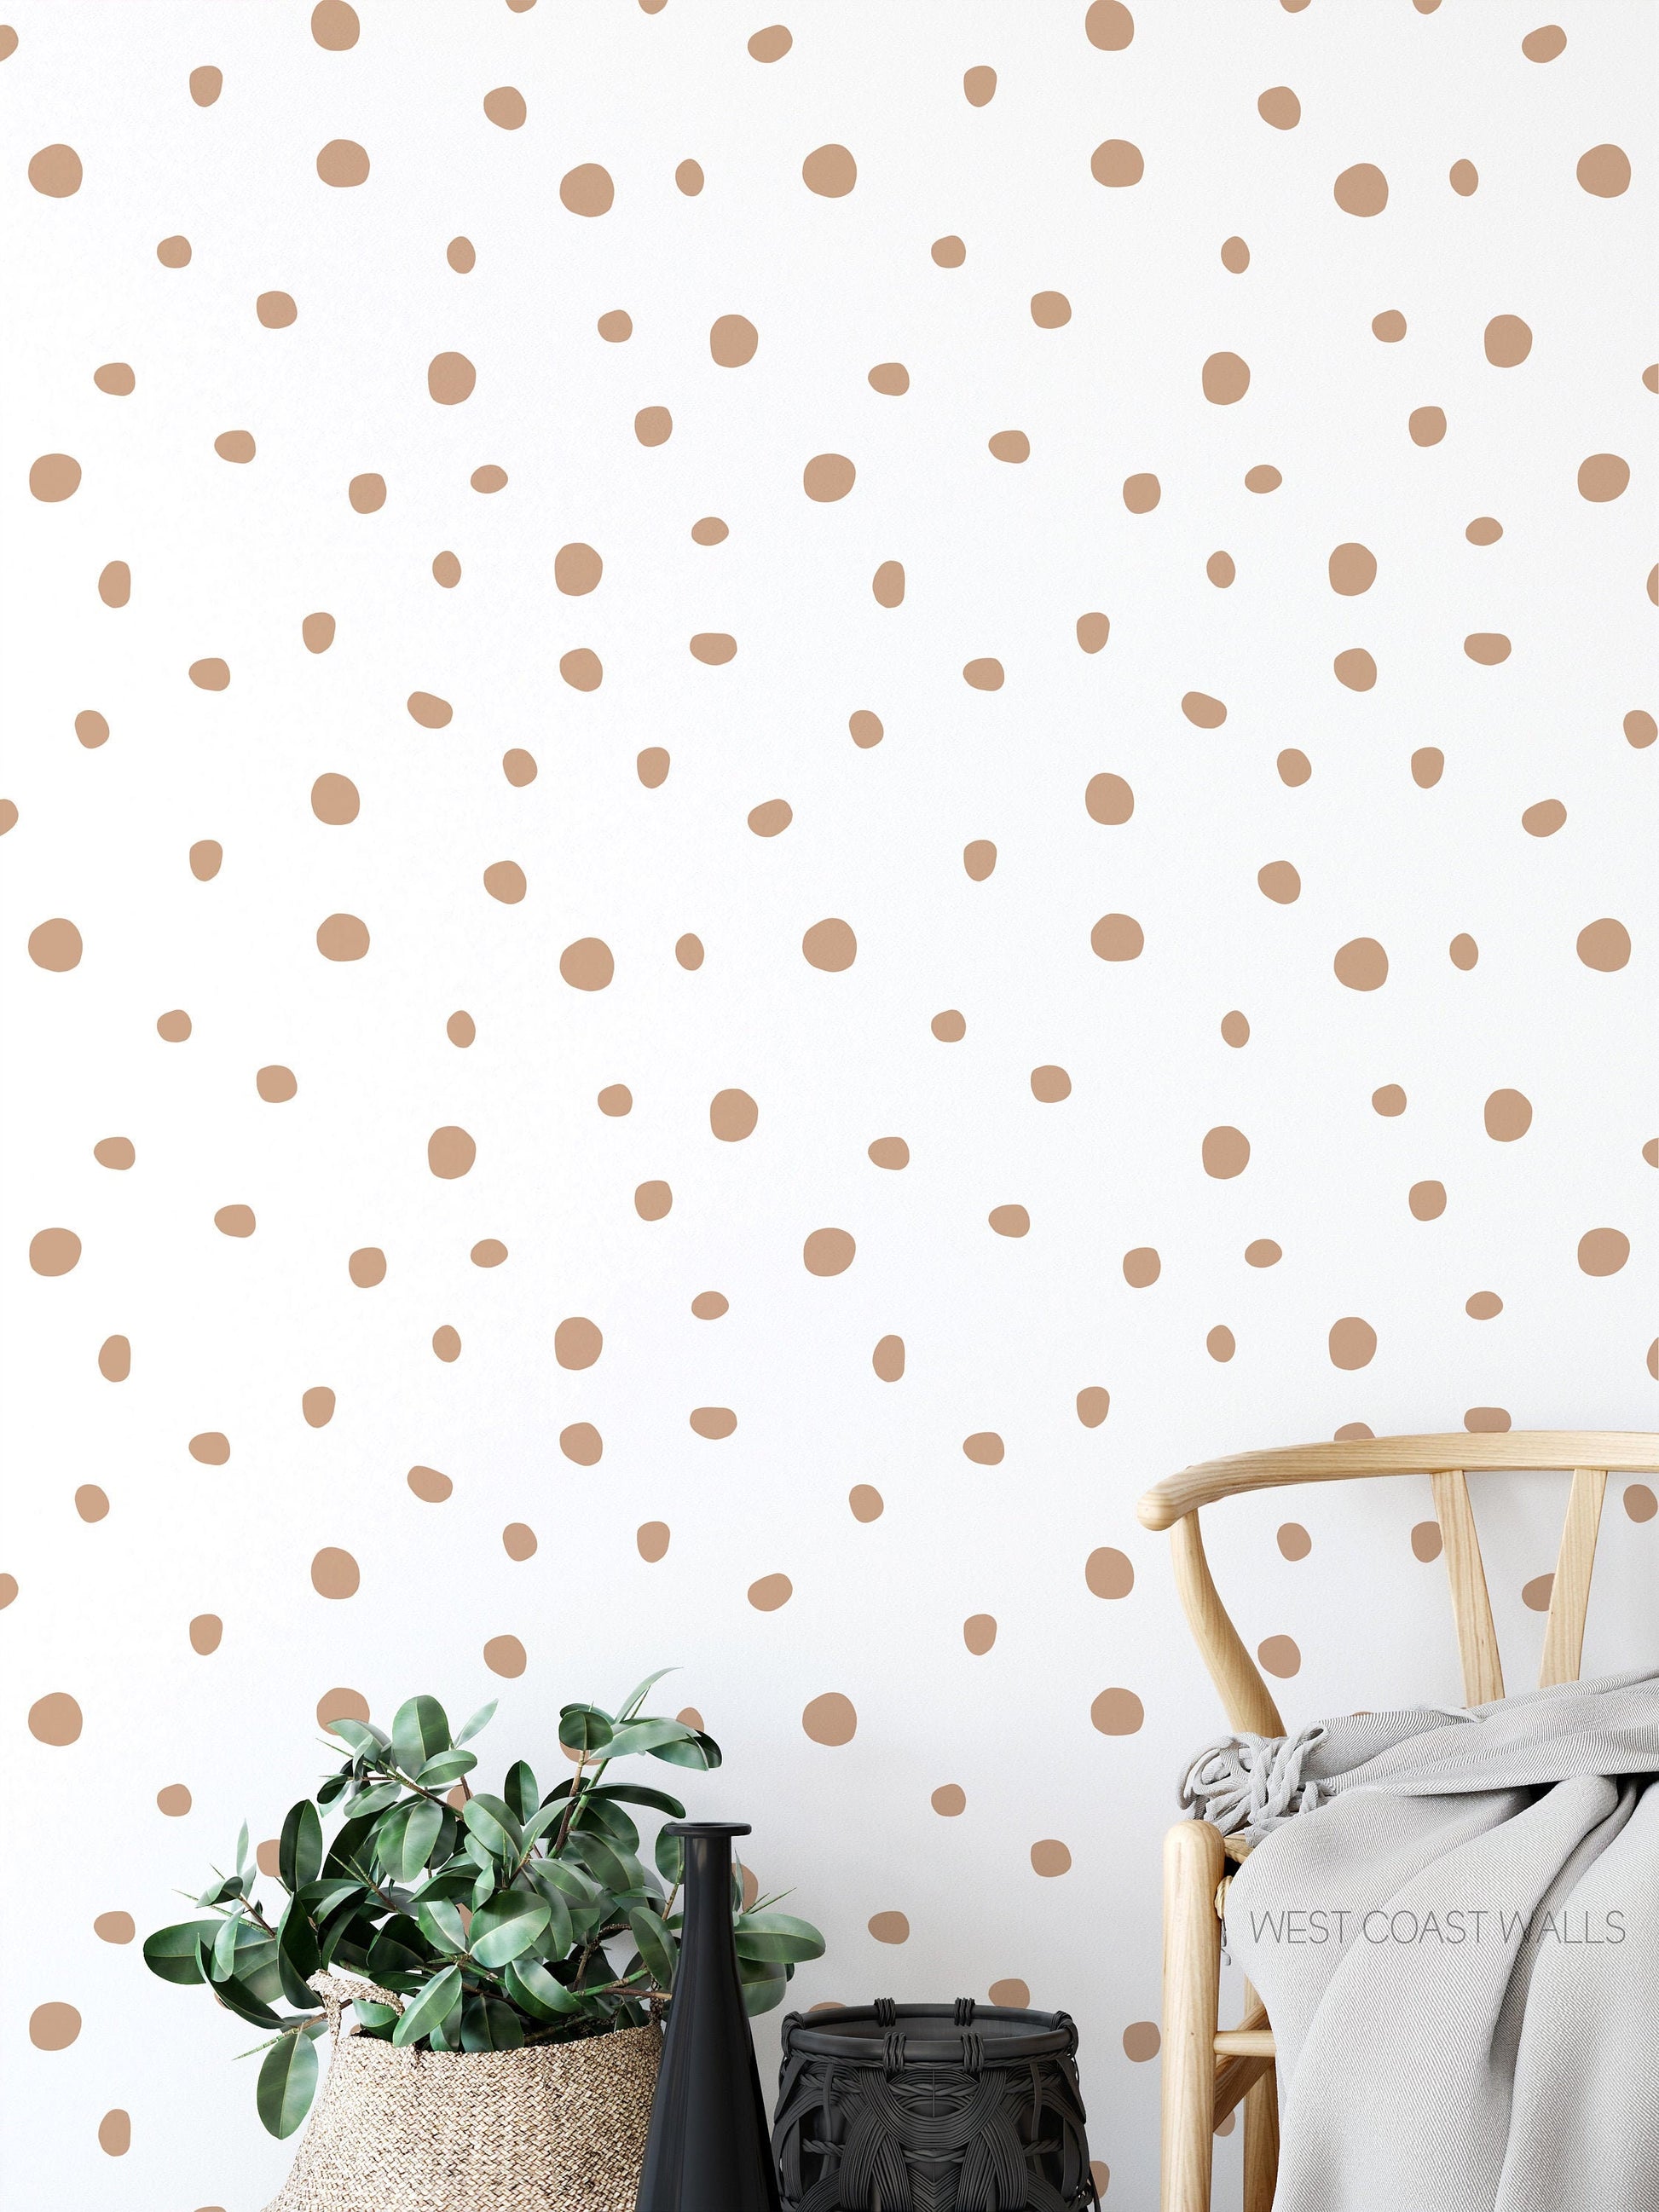 Irregular Dots Wall Decals